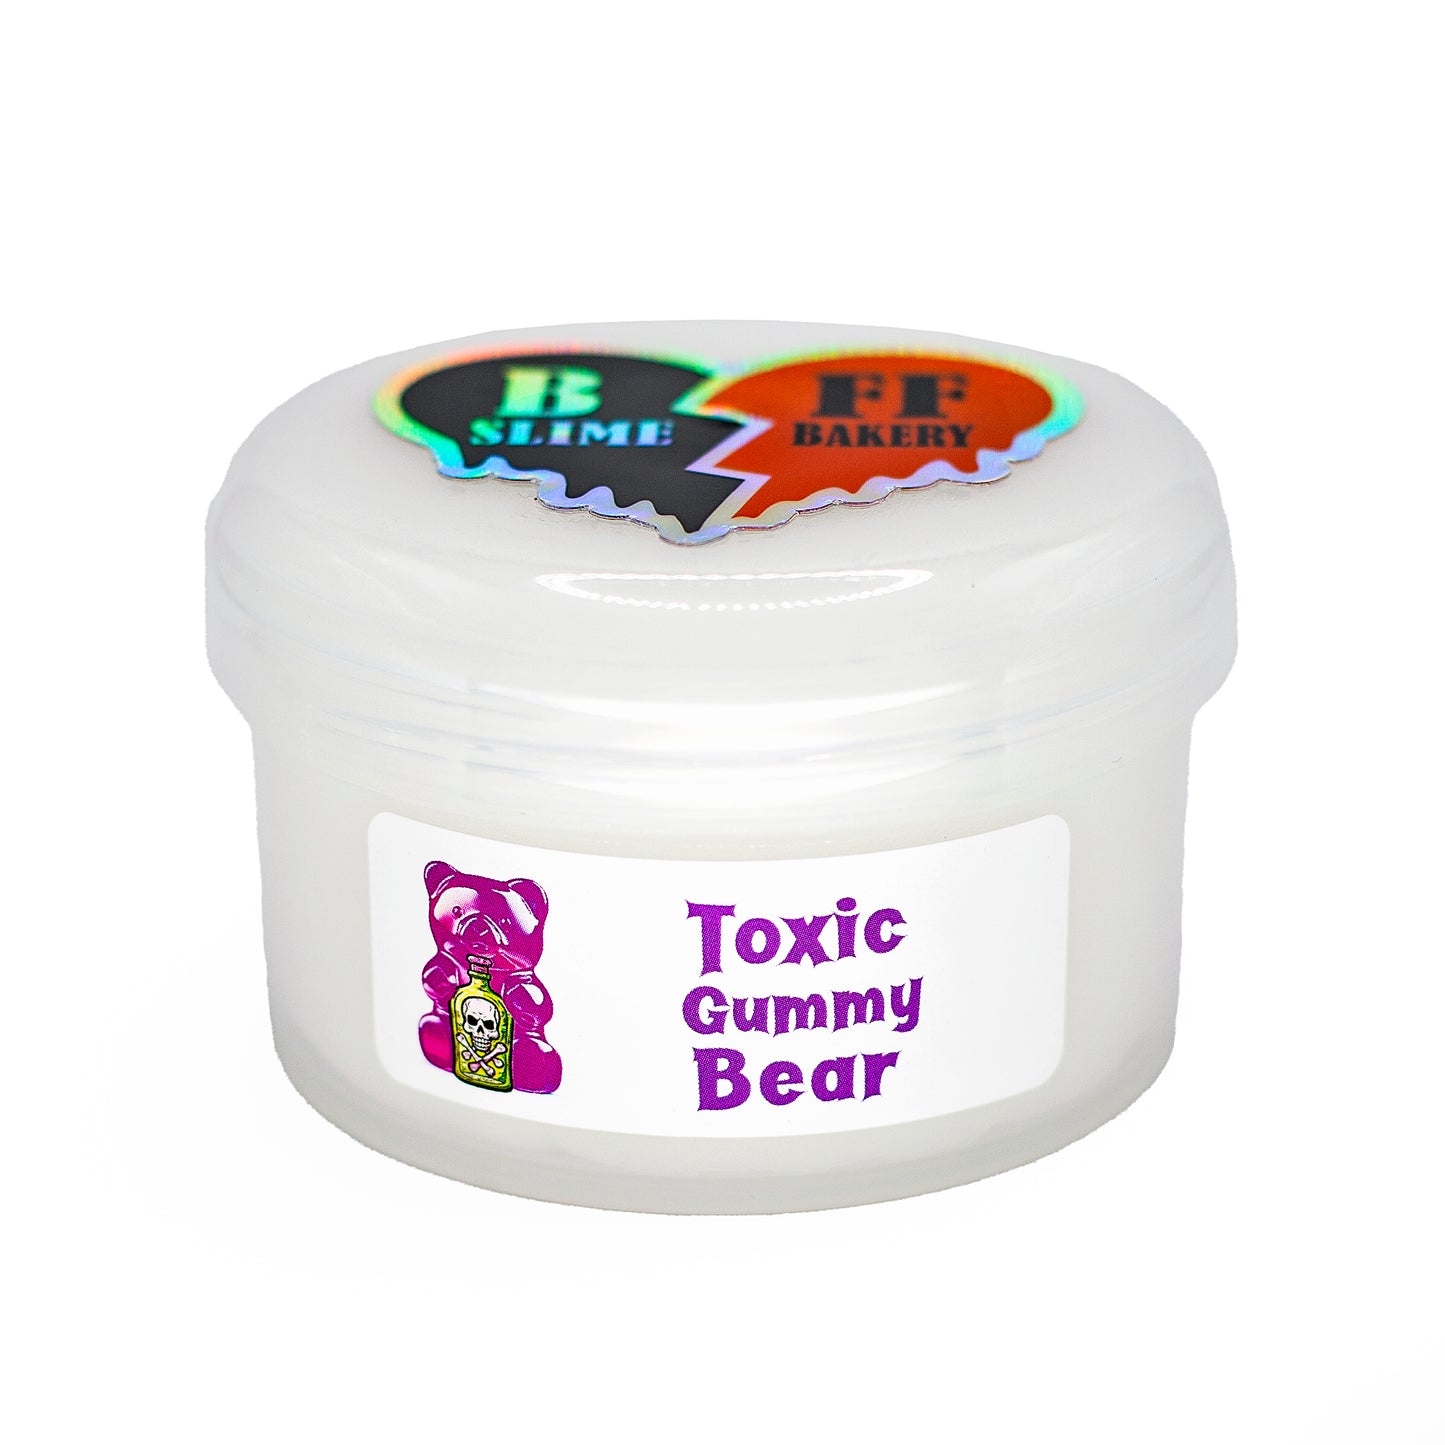 Toxic Gummy Bear